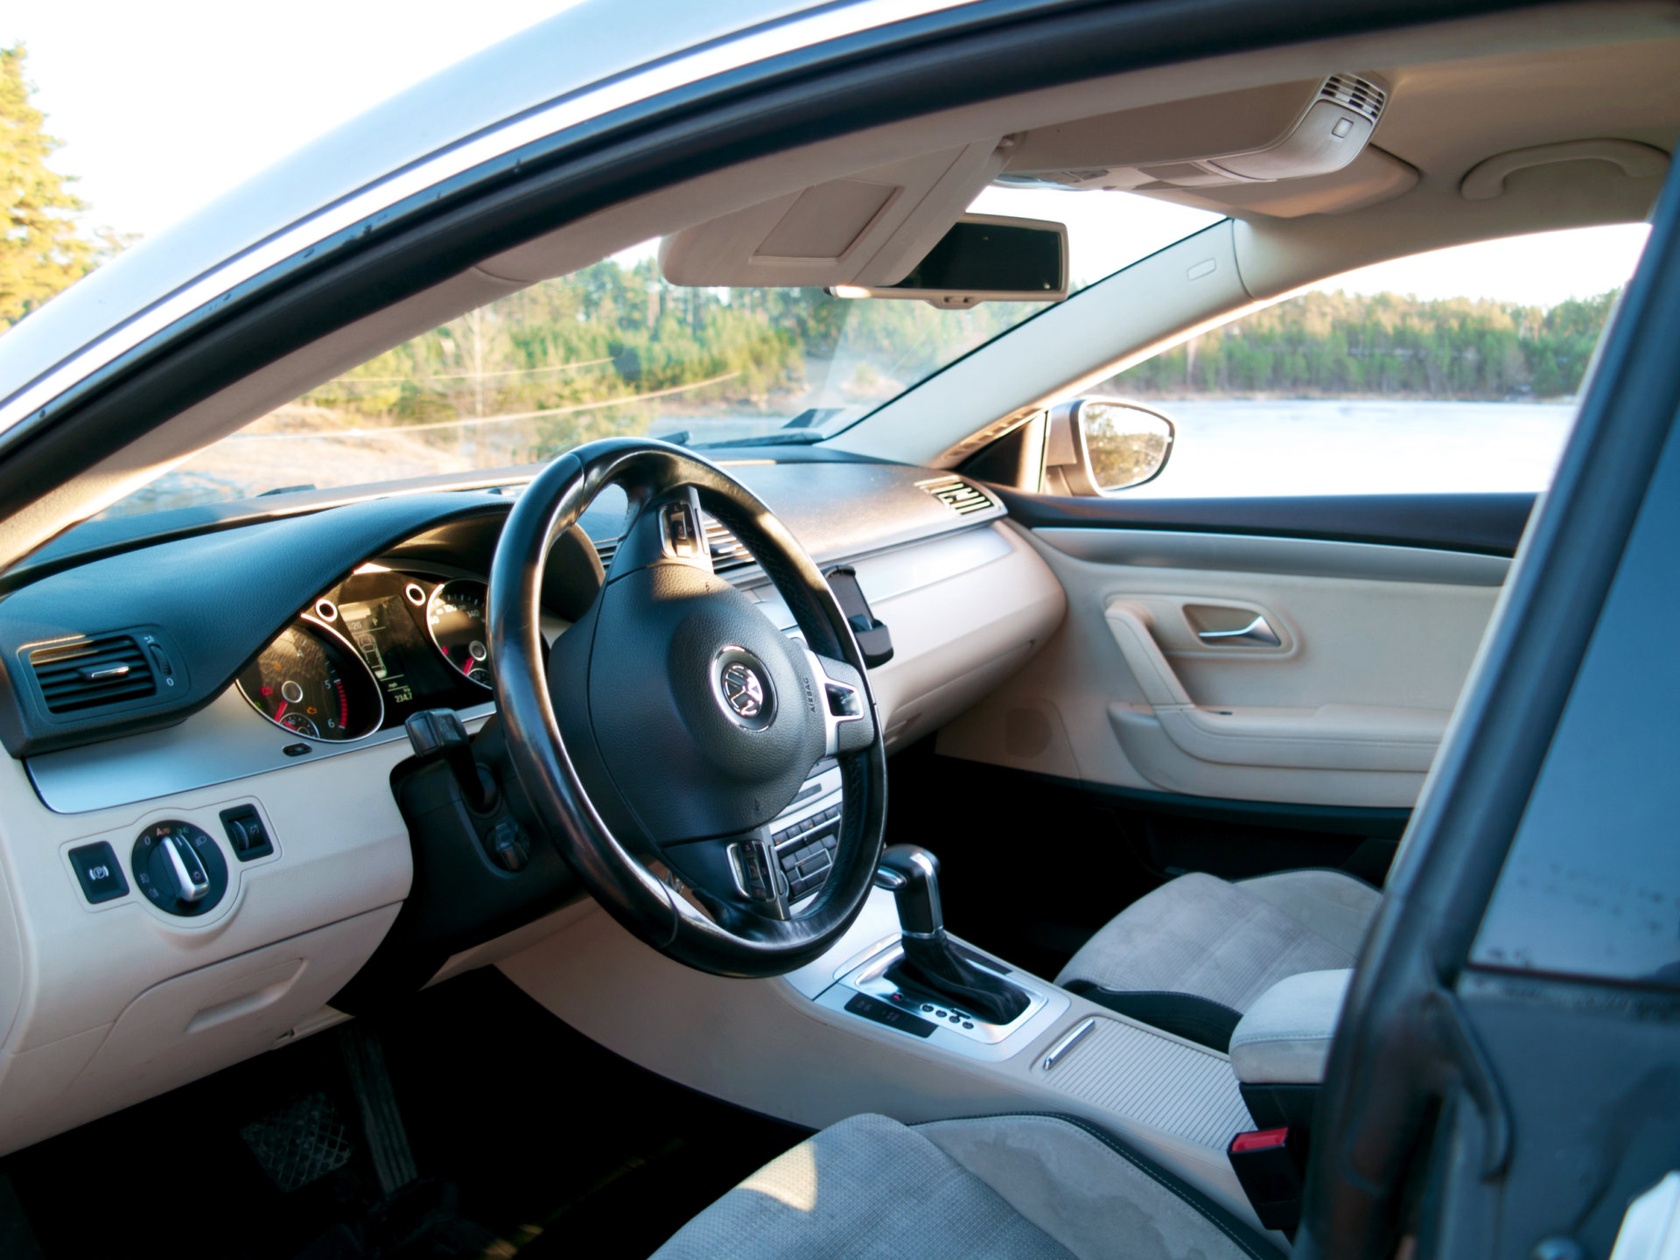 Volkswagen Passat CC najczęściej jest bardzo bogato wyposażony. W większości egzemplarzy znajdziemy m.in.  asystenta pasa ruchu, front assist zapobiegający kolizjom, czujnik martwego pola czy funkcję automatycznego parkowania.